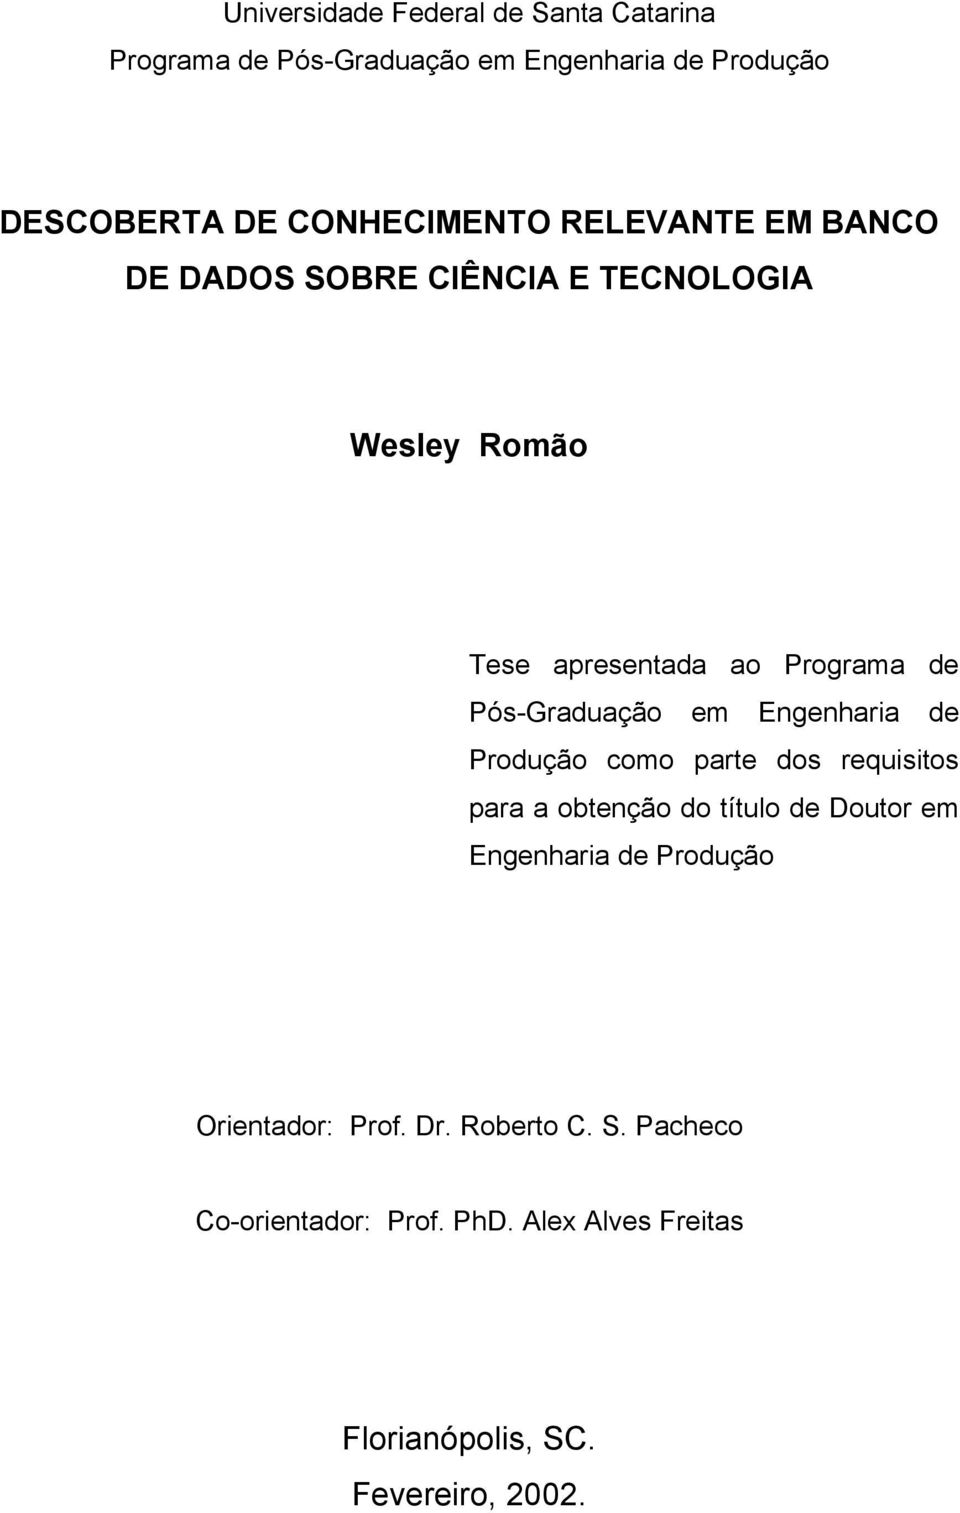 Engenharia de Produção como parte dos requisitos para a obtenção do título de Doutor em Engenharia de Produção